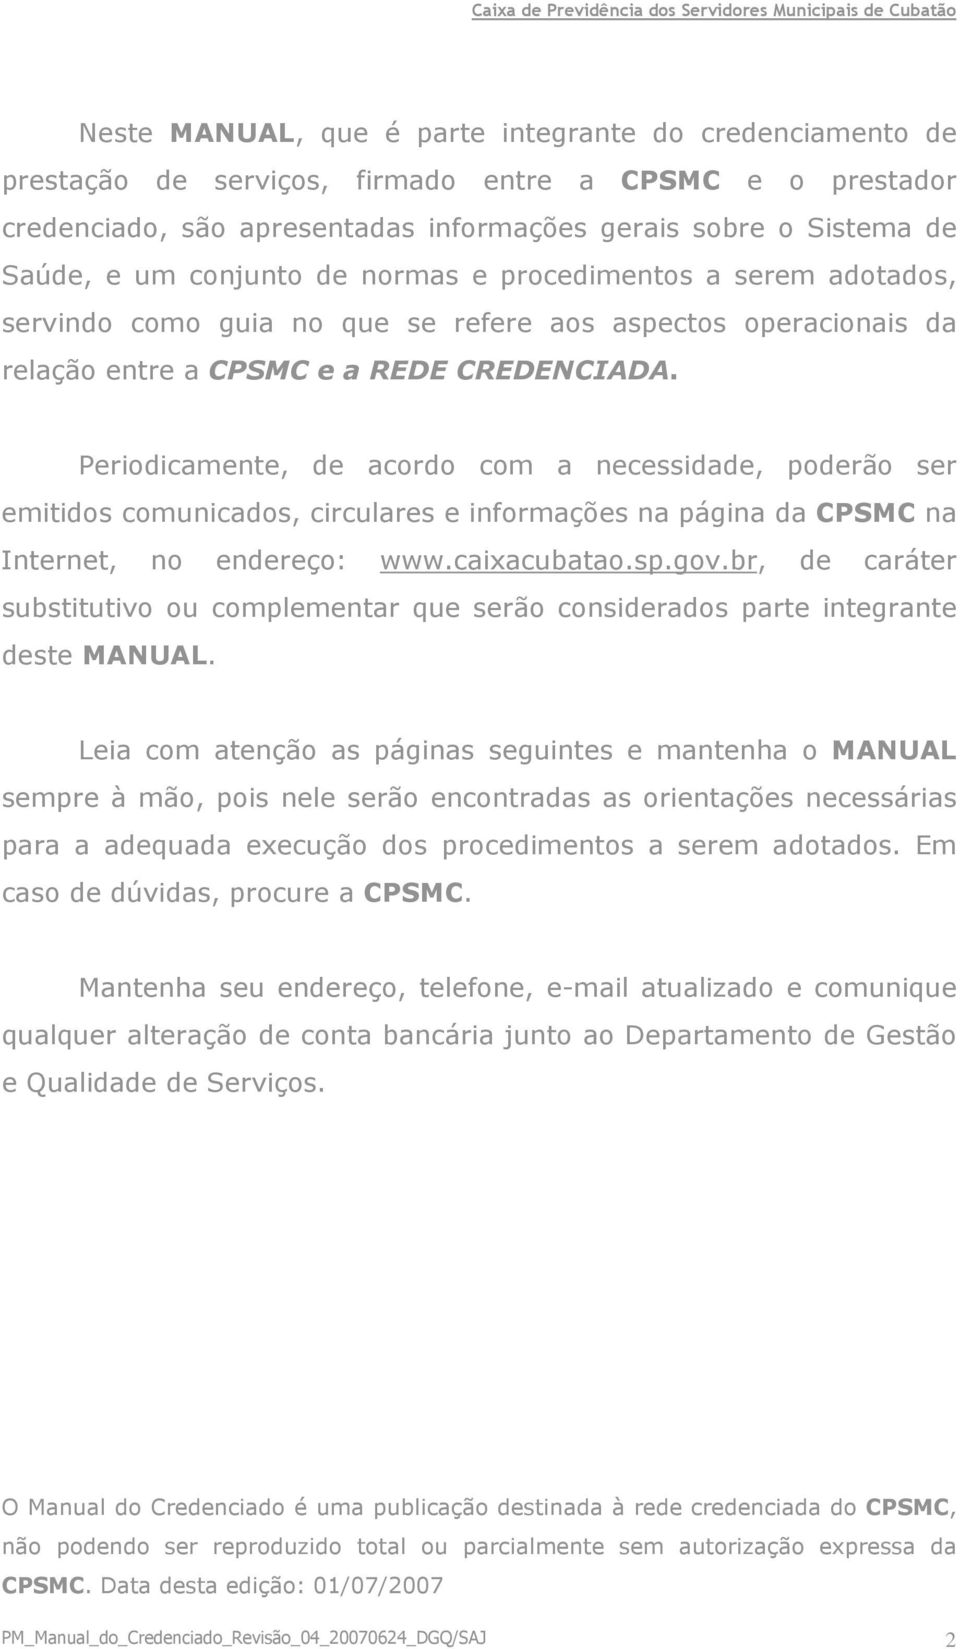 Periodicamente, de acordo com a necessidade, poderão ser emitidos comunicados, circulares e informações na página da CPSMC na Internet, no endereço: www.caixacubatao.sp.gov.